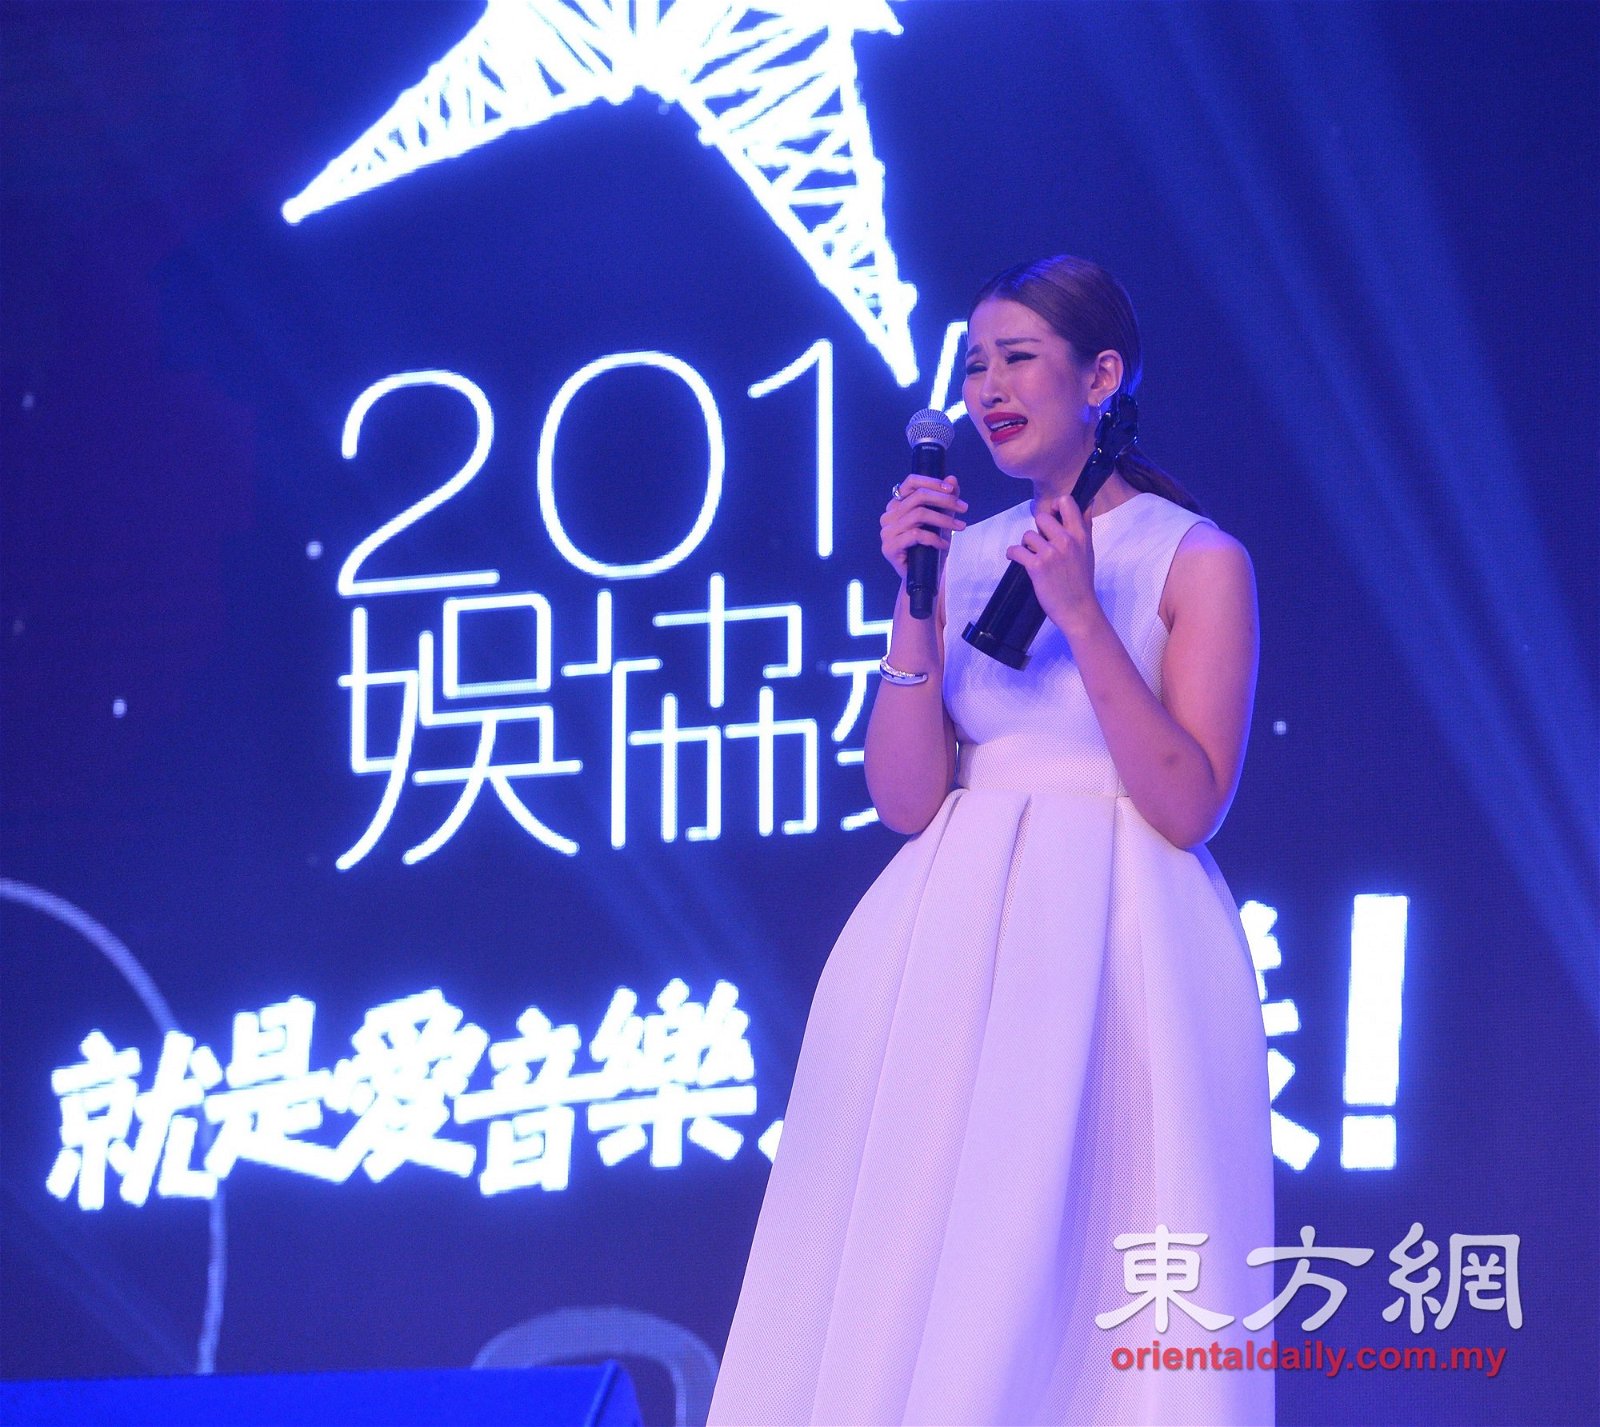 打败温力铭、张智成、黄威尔等人的苏盈之在 夺得“传媒推荐大奖”时泪洒舞台。